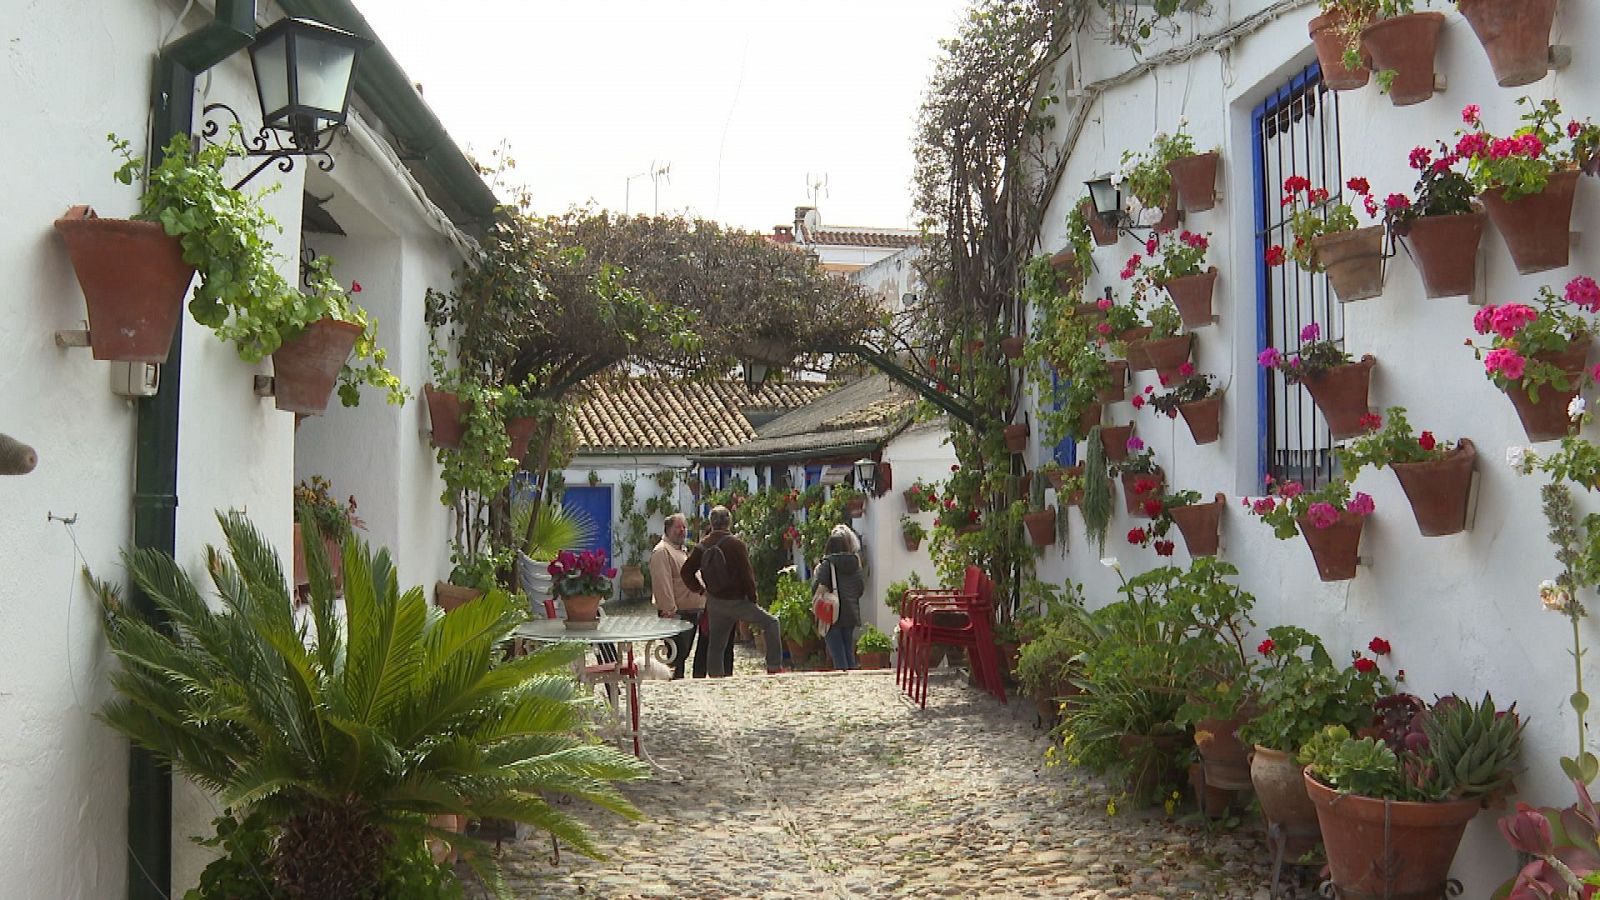 En Córdoba, los patios han adquirido un sentido único